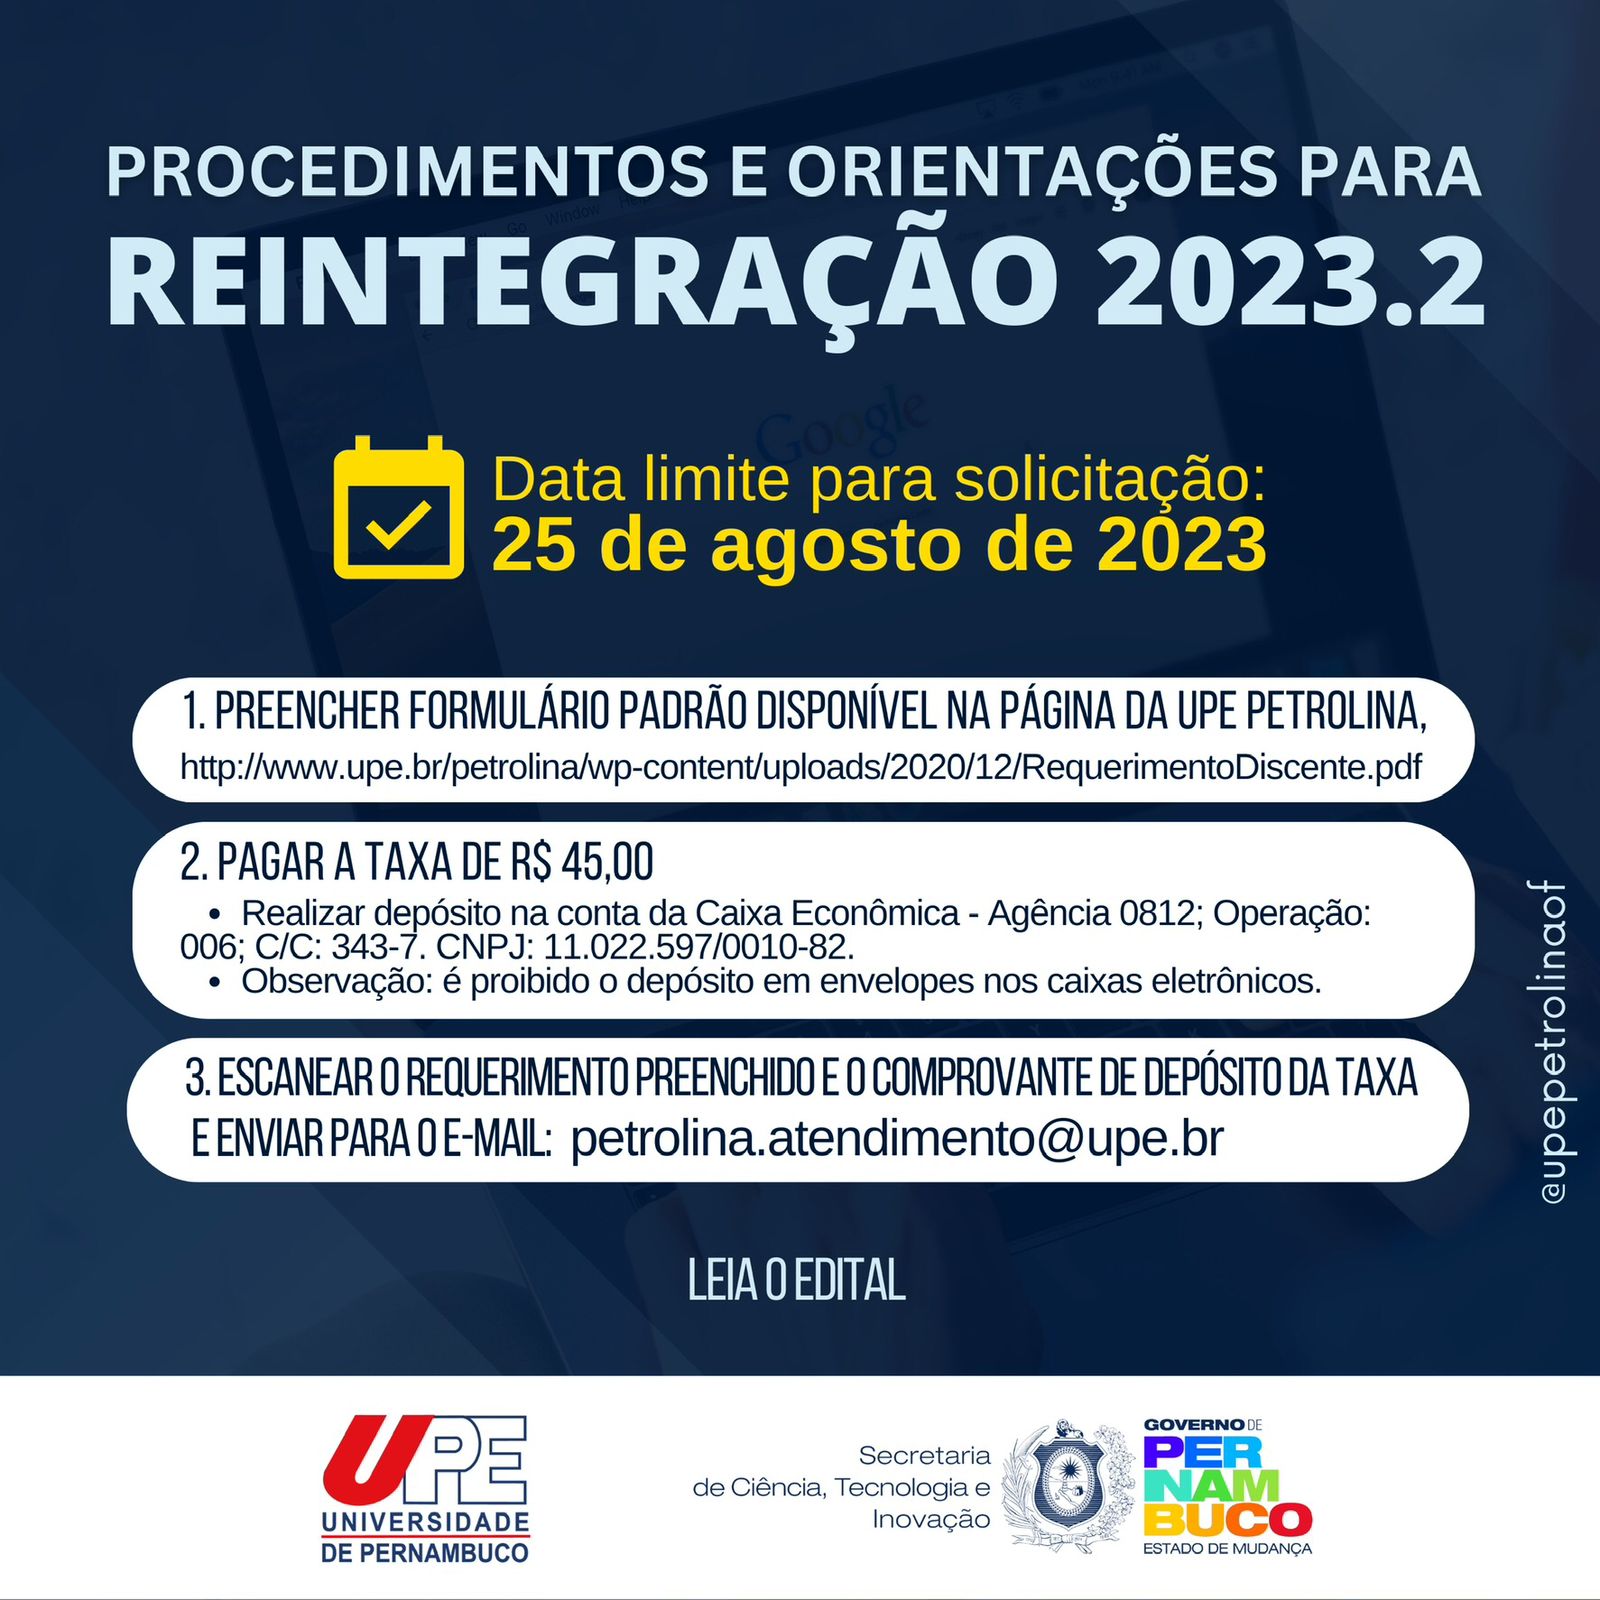 Procedimentos e orientações para reintegração 2023.2